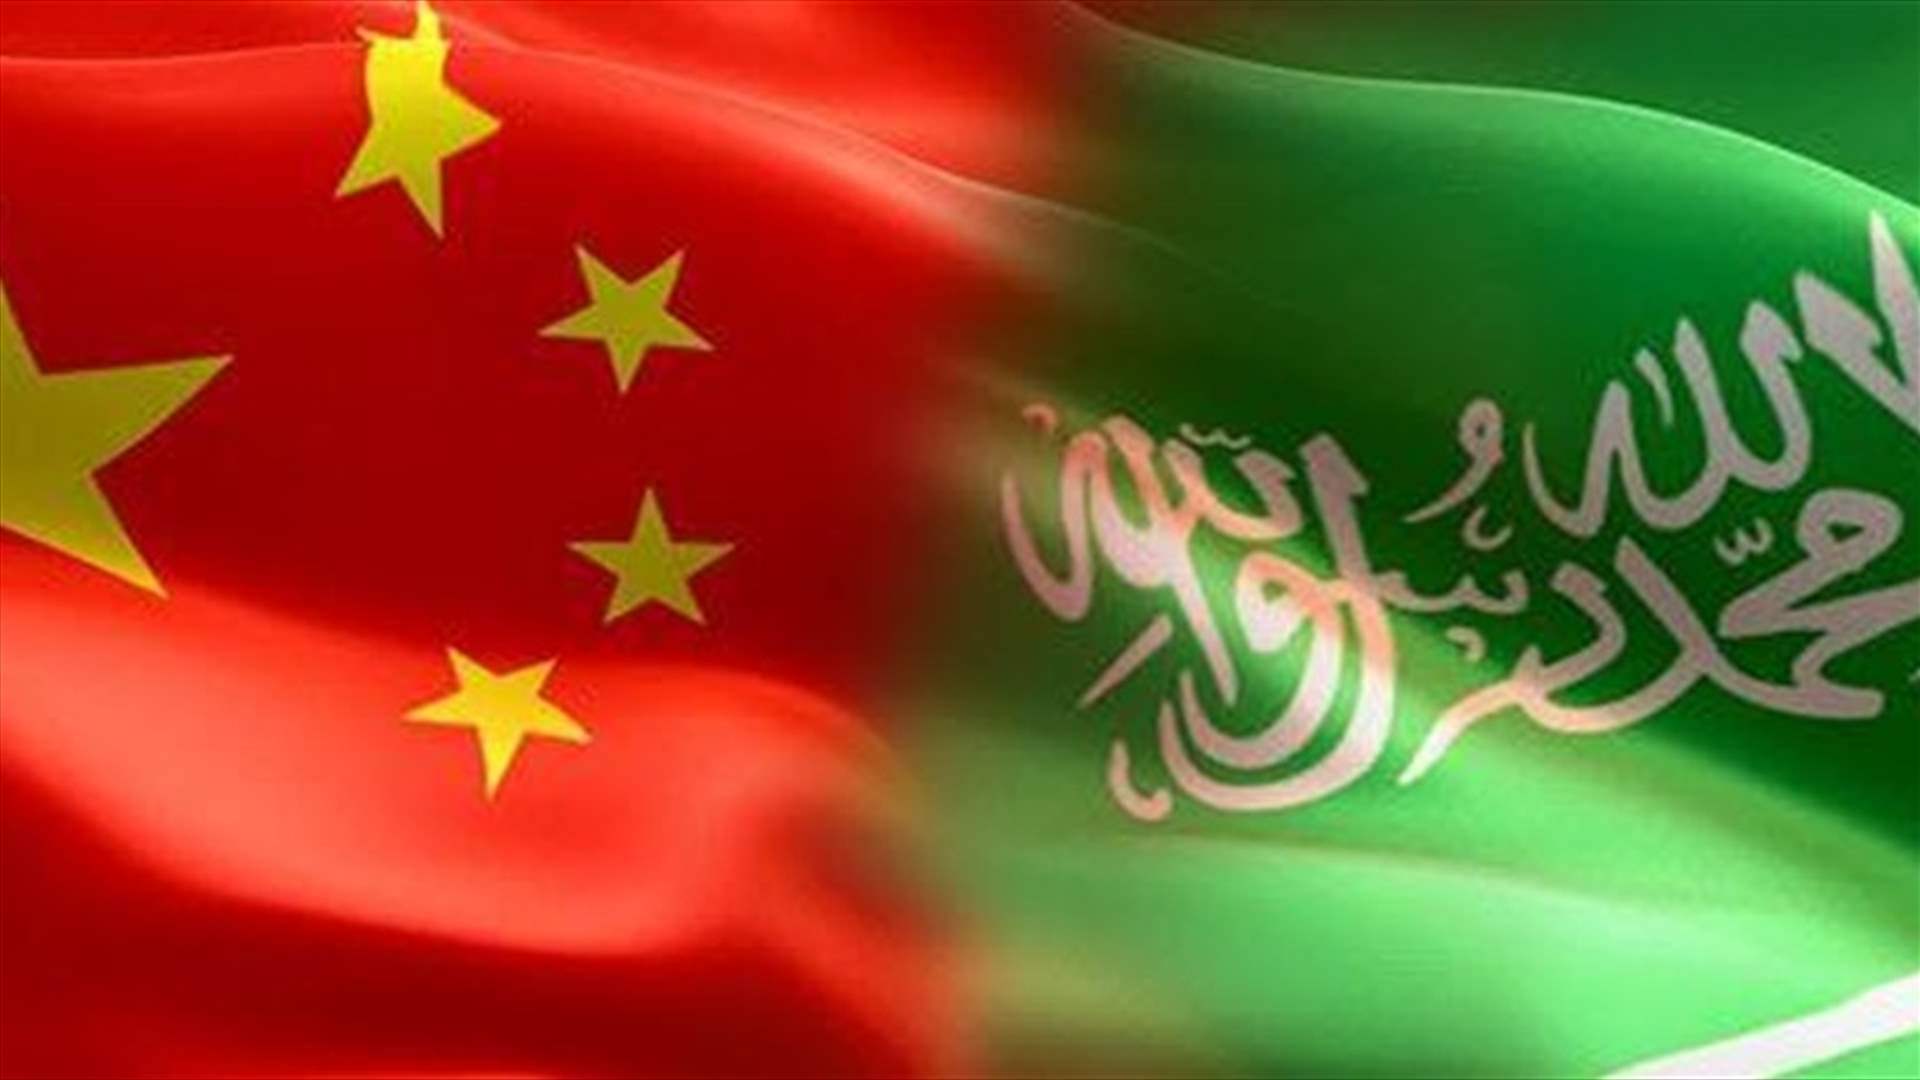 السعودية سترسل وفدا يضم وزير الاستثمار في المملكة إلى الصين هذا الأسبوع